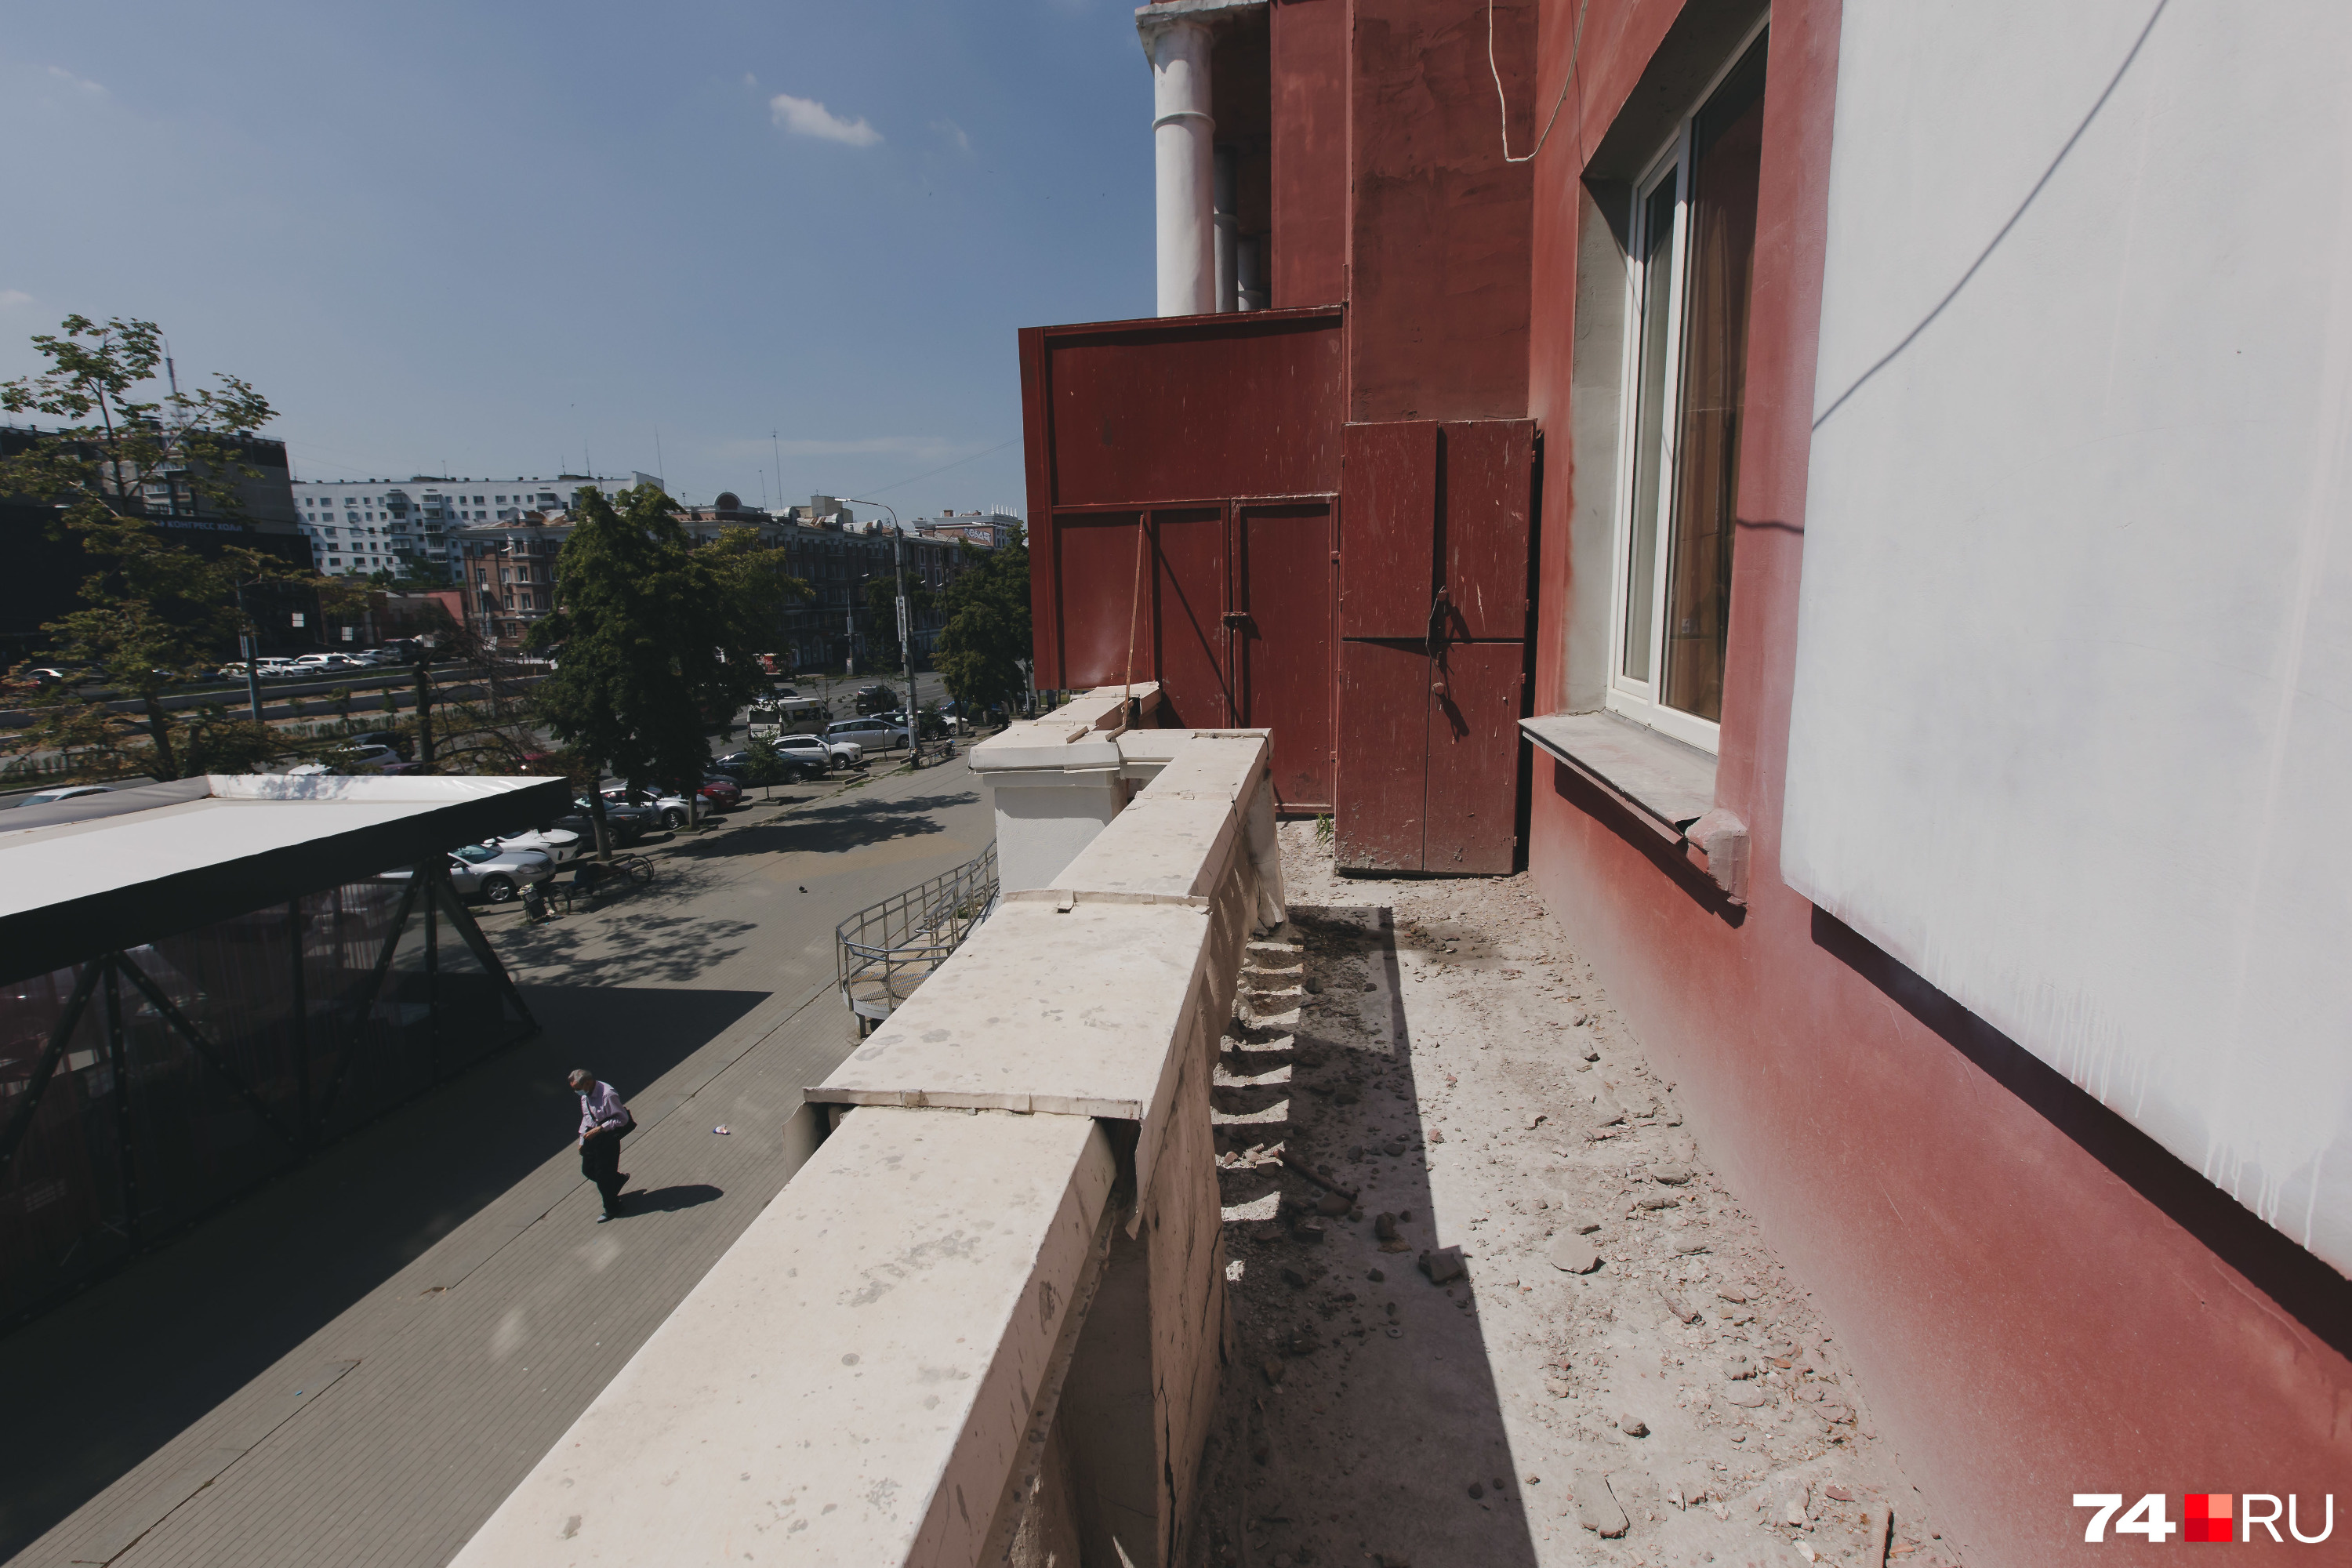 На балконе жители установили железную дверь — защиту от воров, которые забирались с улицы в квартиры